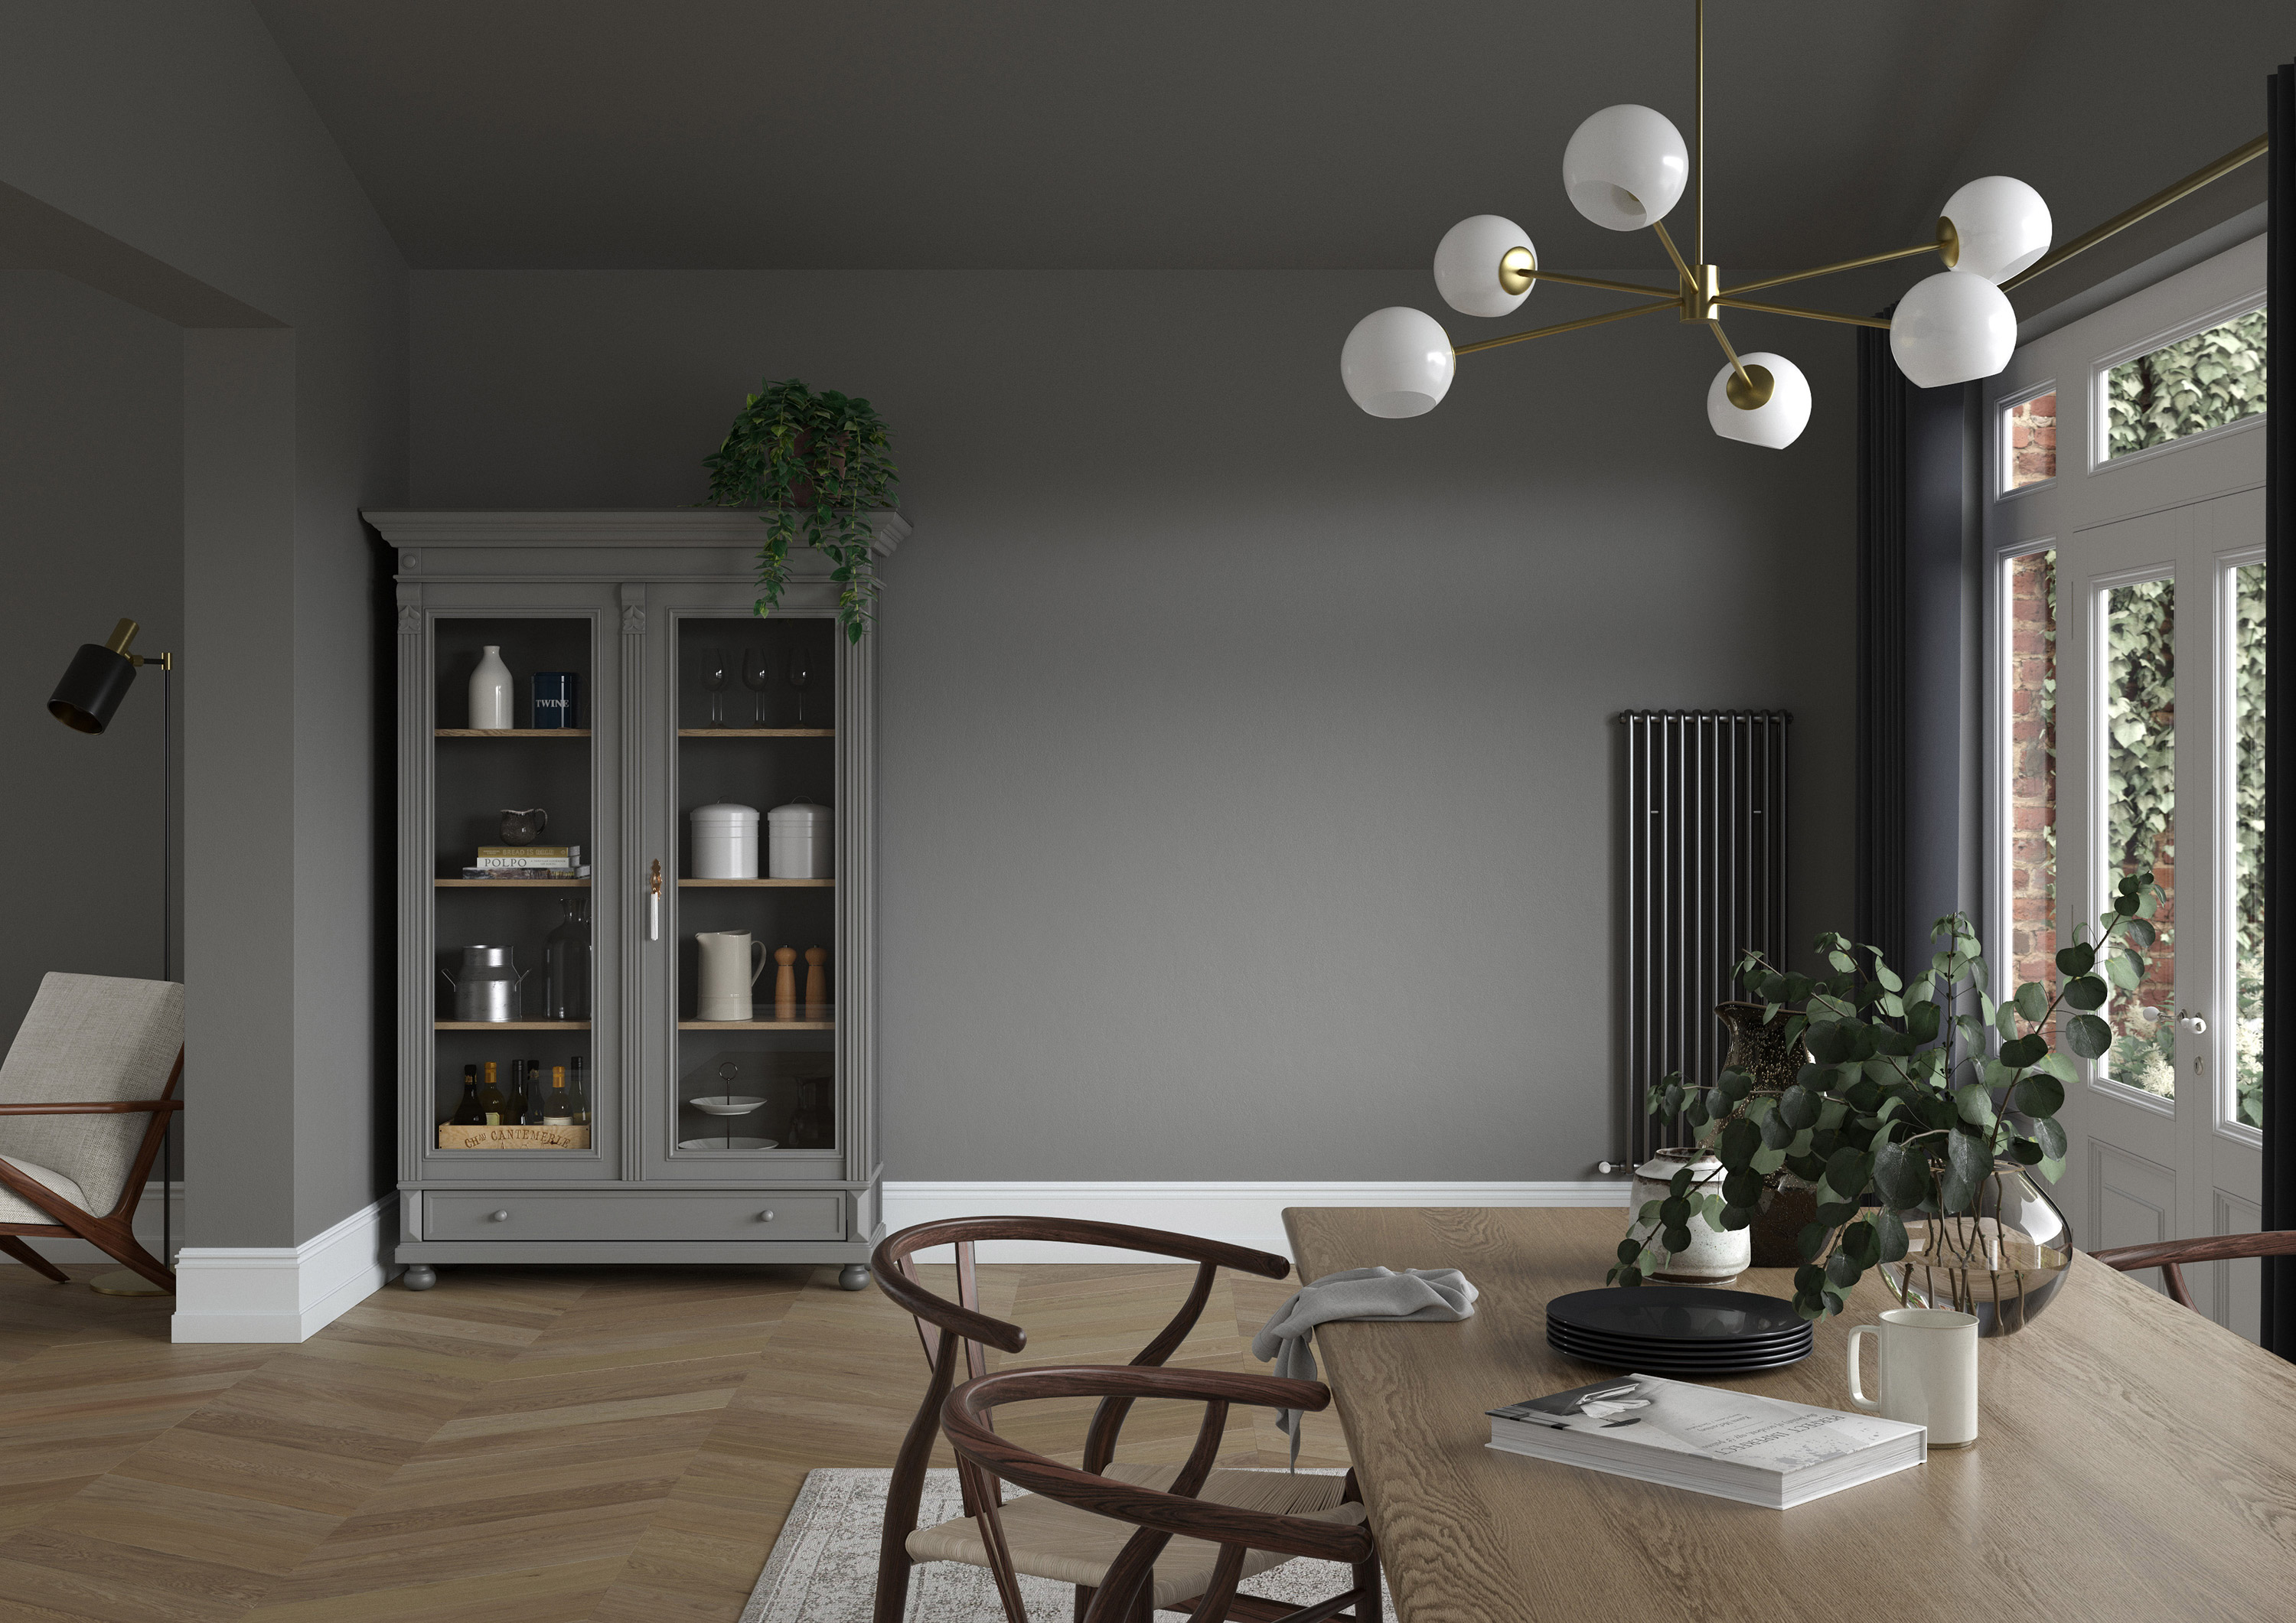 Diningroom   Wall   Lead Grey, Woodwork   Lead White, Ceiling   Lead Grey, Dresser   Lead Grey